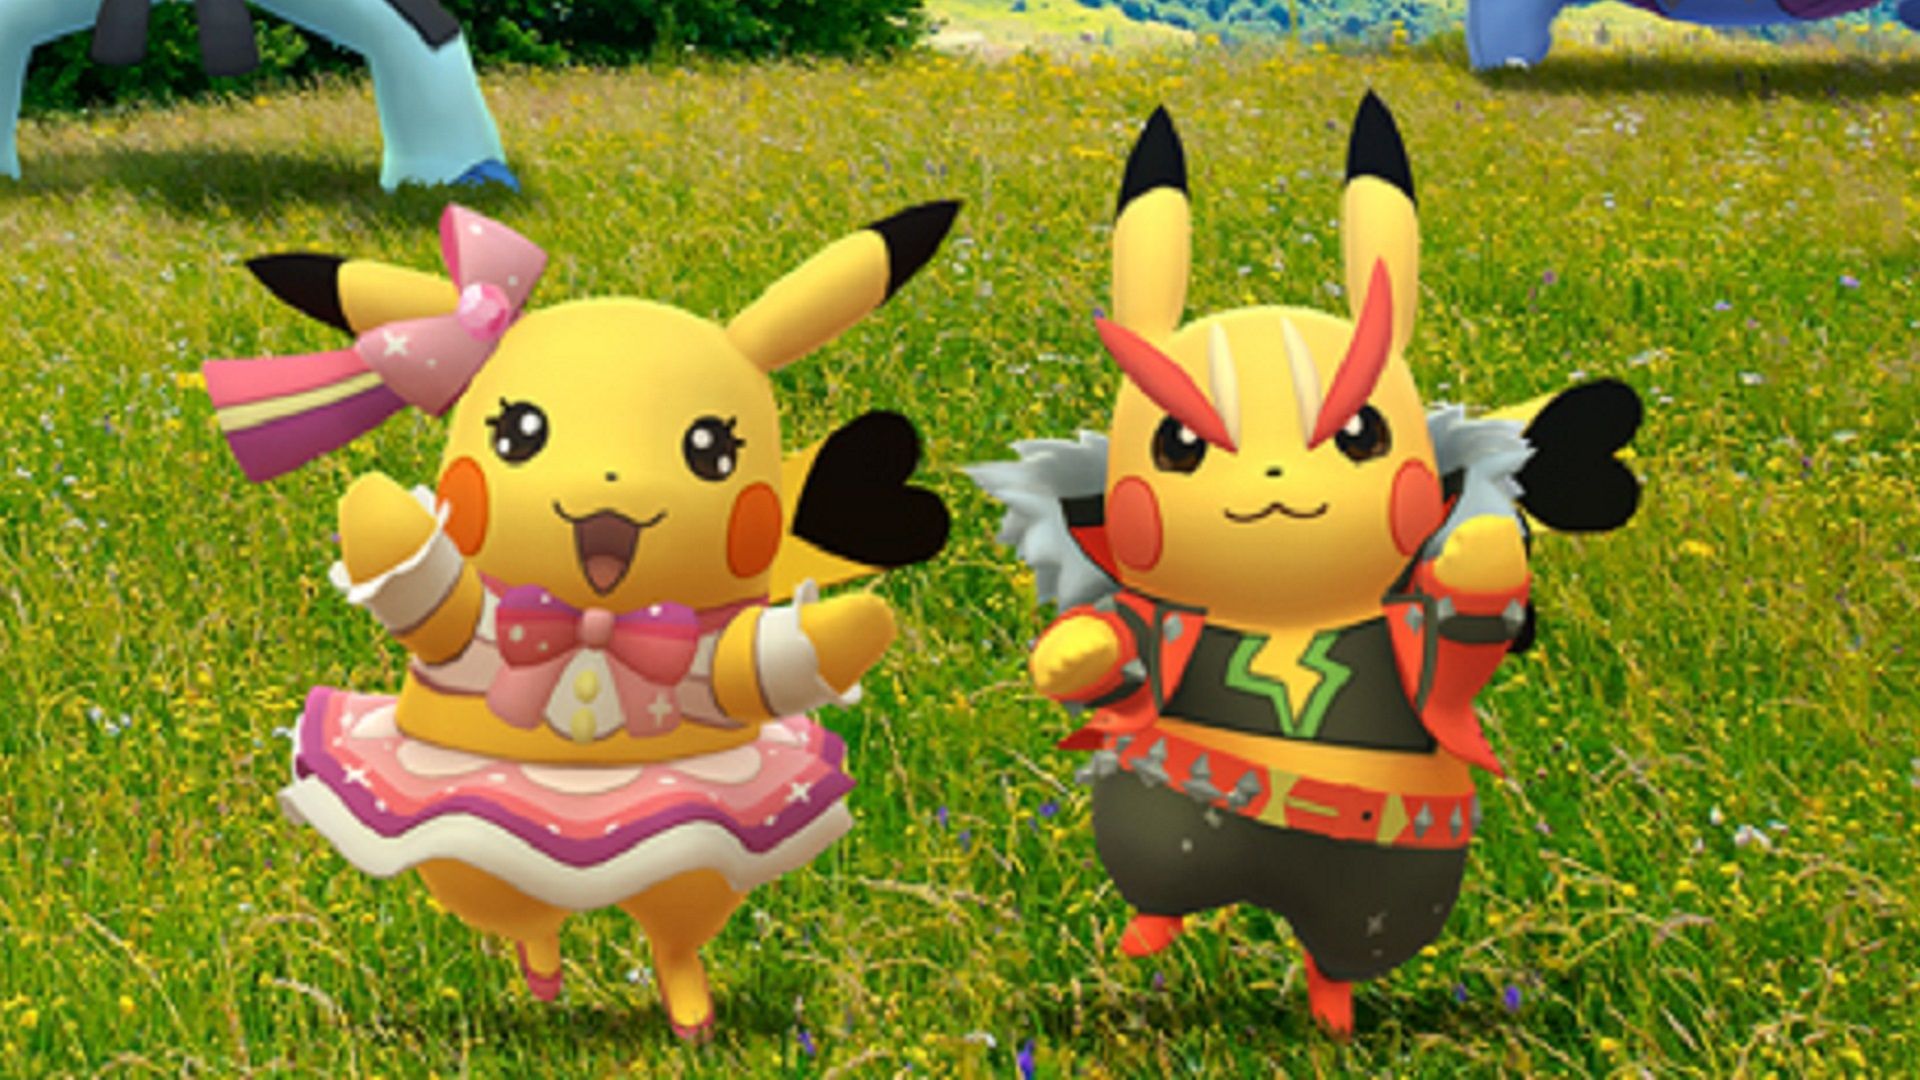 Bintang Pop Rock Pikachu=pokemon Go Fest Pemuatan